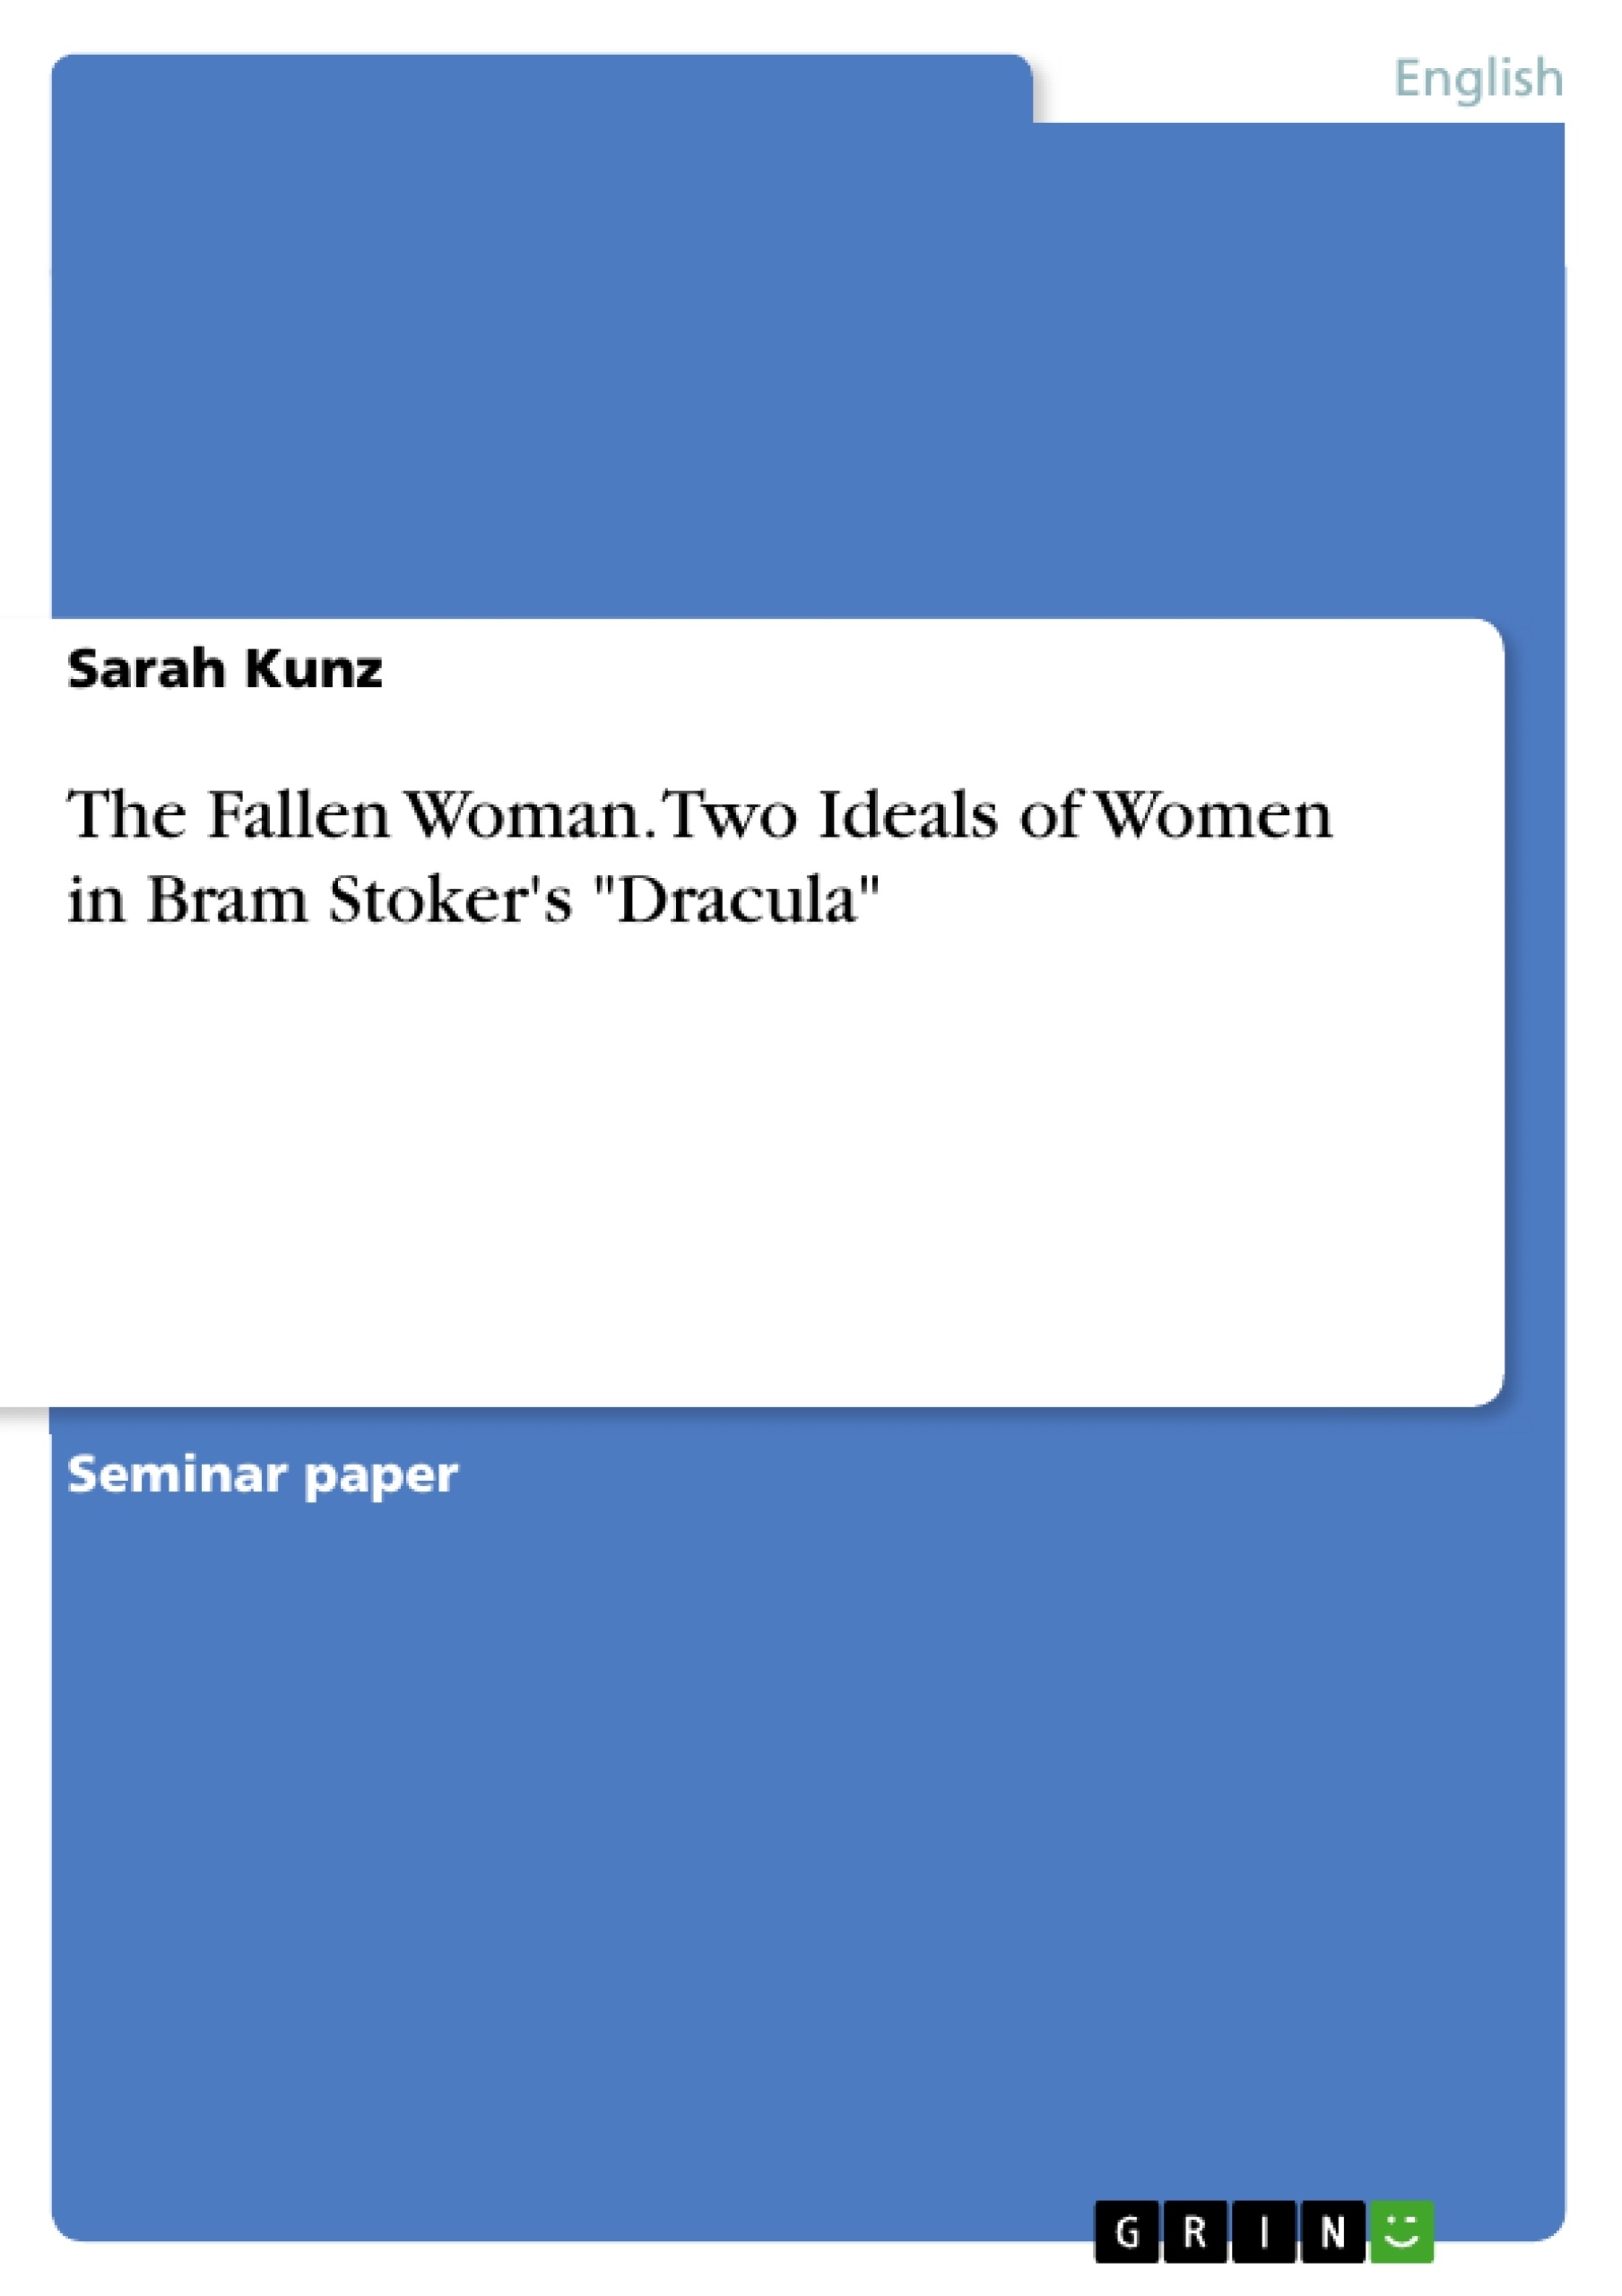 Titre: The Fallen Woman. Two Ideals of Women in Bram Stoker's "Dracula"